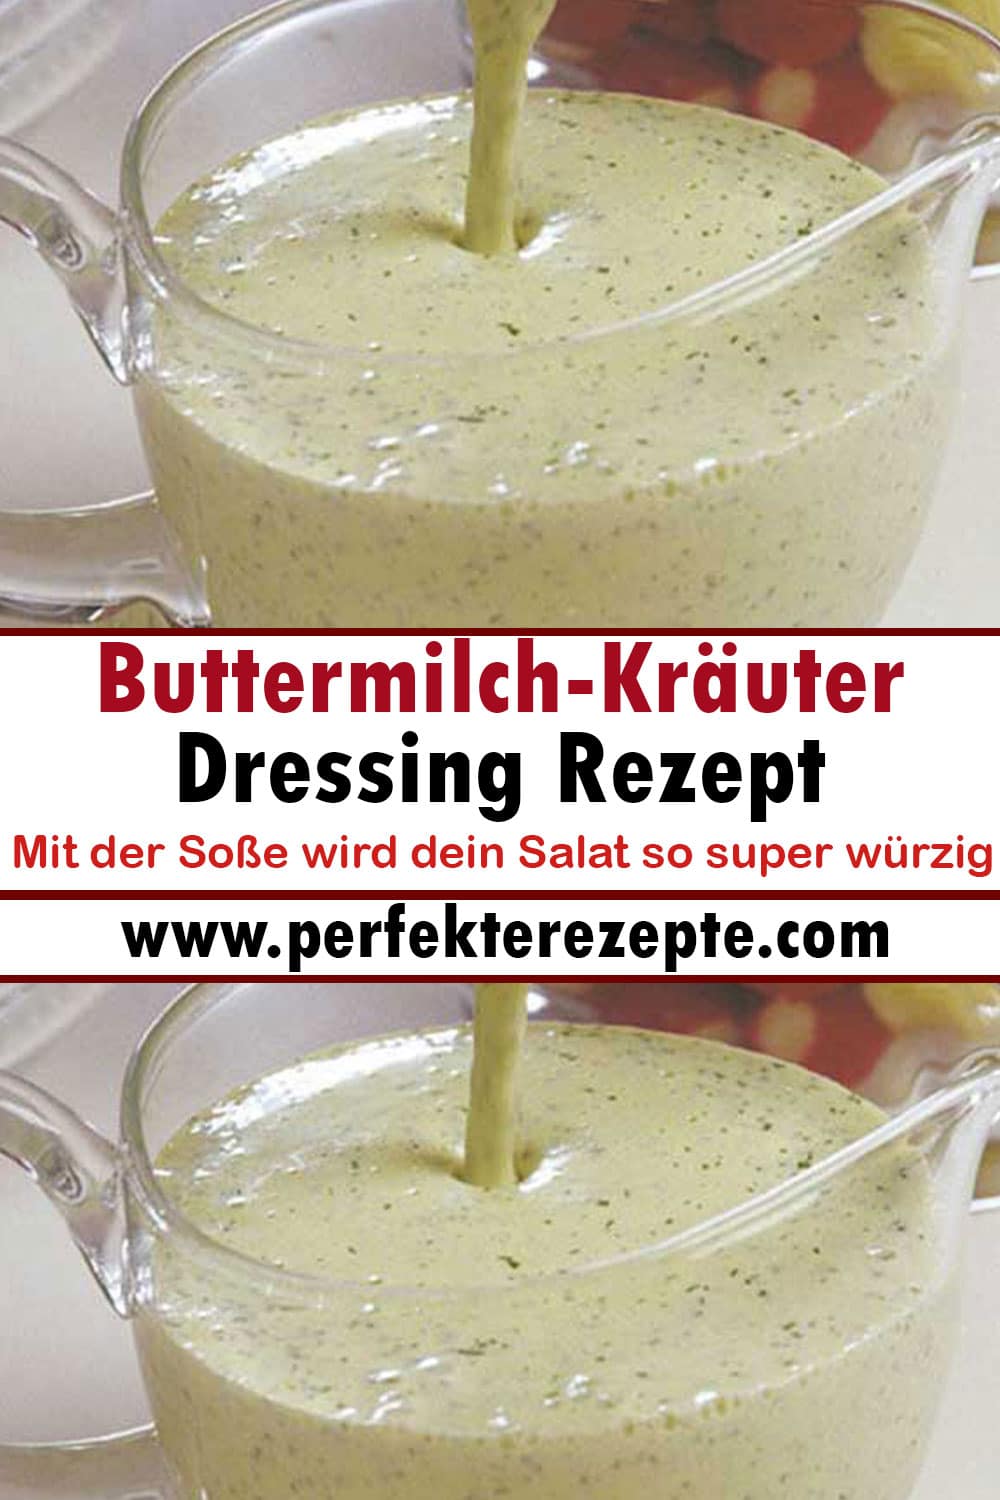 Buttermilch-Kräuter-Dressing Rezept Mit der Soße wird dein Salat so super würzig